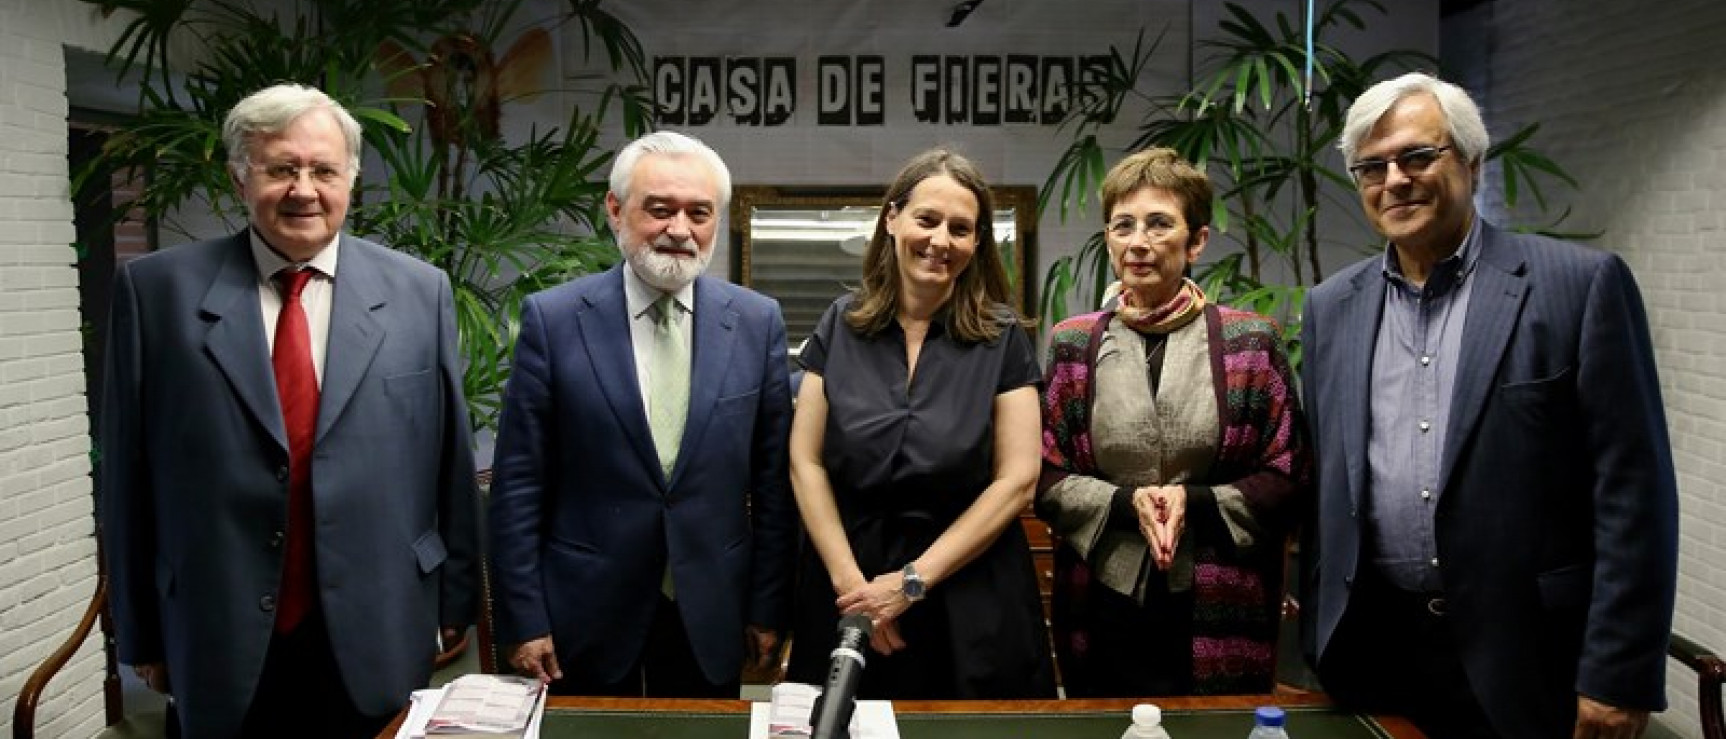 De izquierda a derecha: Tomás Albaladejo, Darío Villanueva, Filipa Soares, Pilar del Río y Carlos Reis.